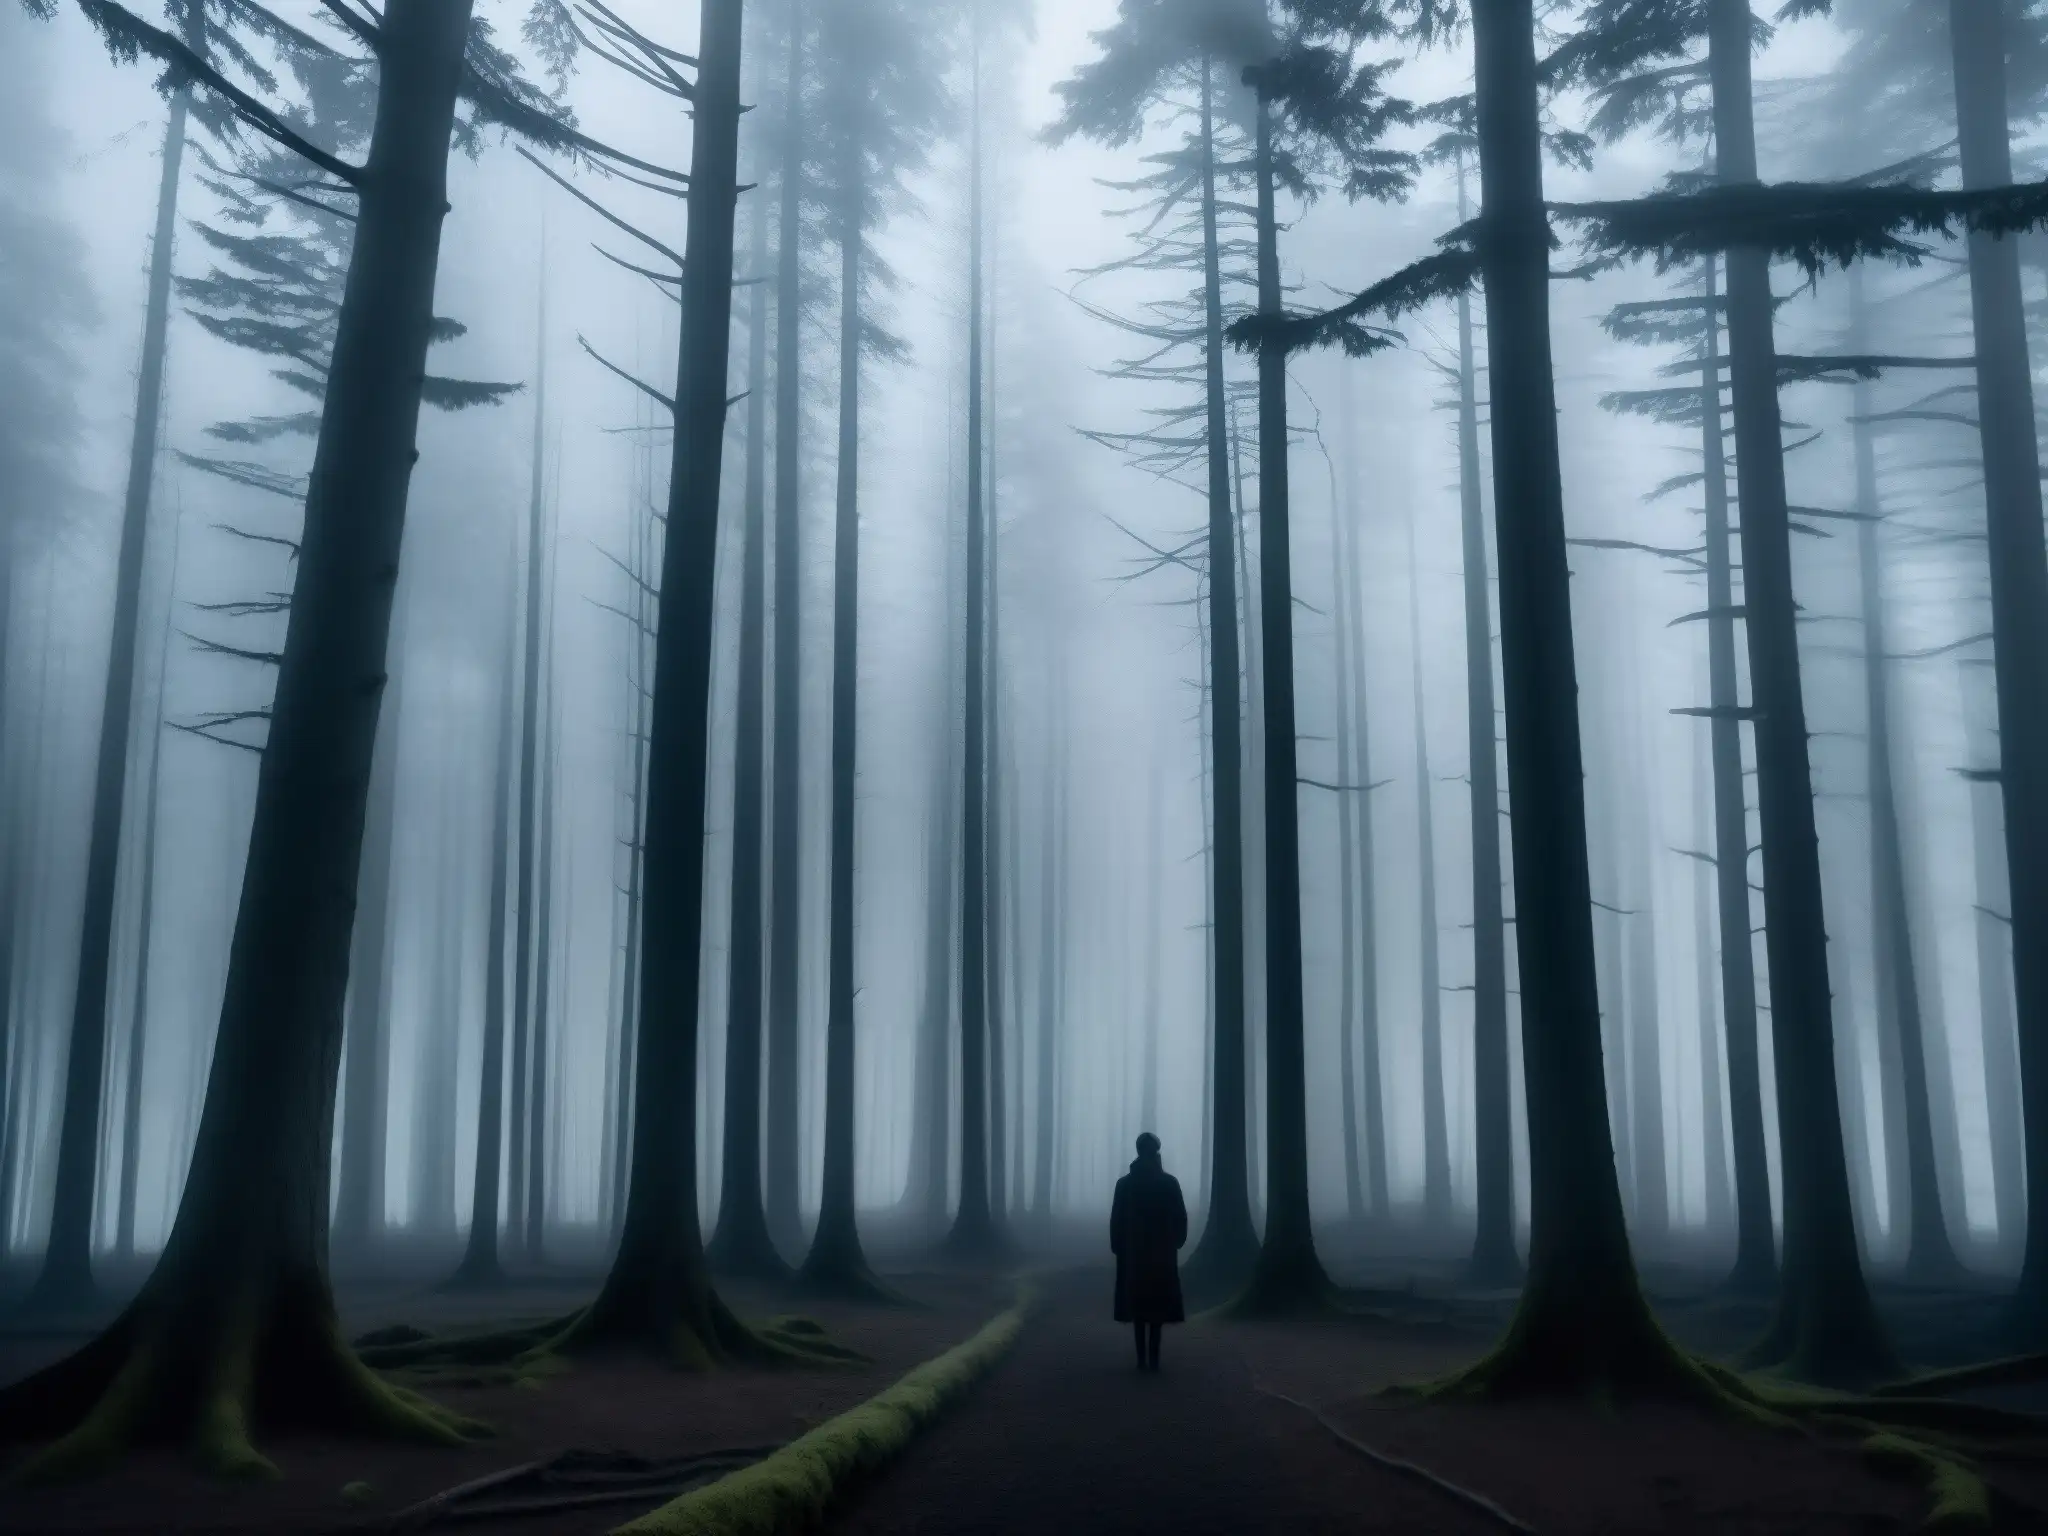 En un bosque nebuloso al anochecer, árboles altos proyectan sombras ominosas